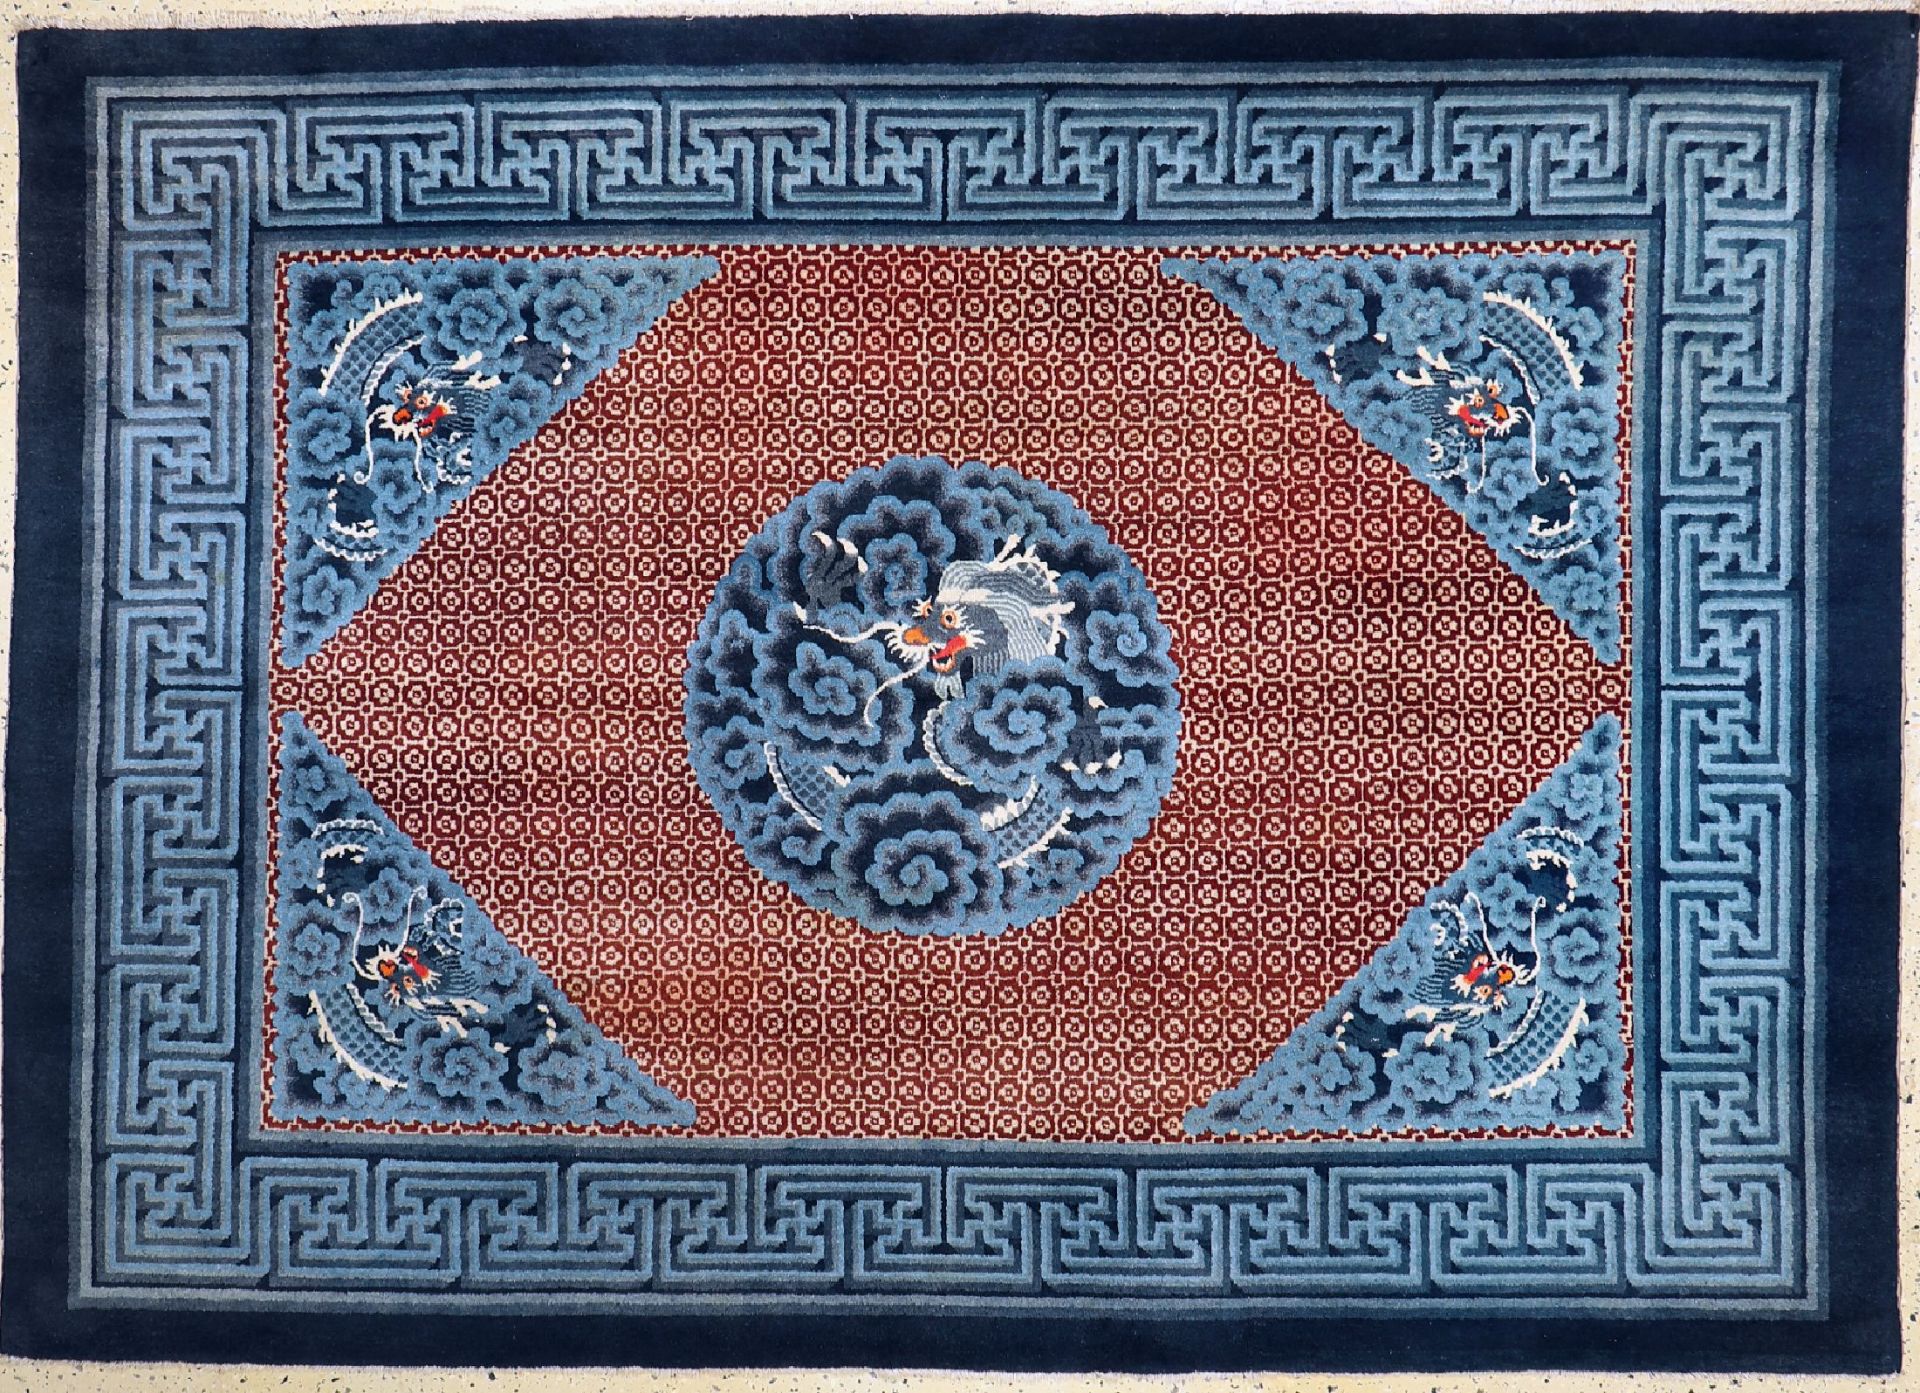 Antiker'Drachen-Teppich',   China, um 1900, Wolle auf